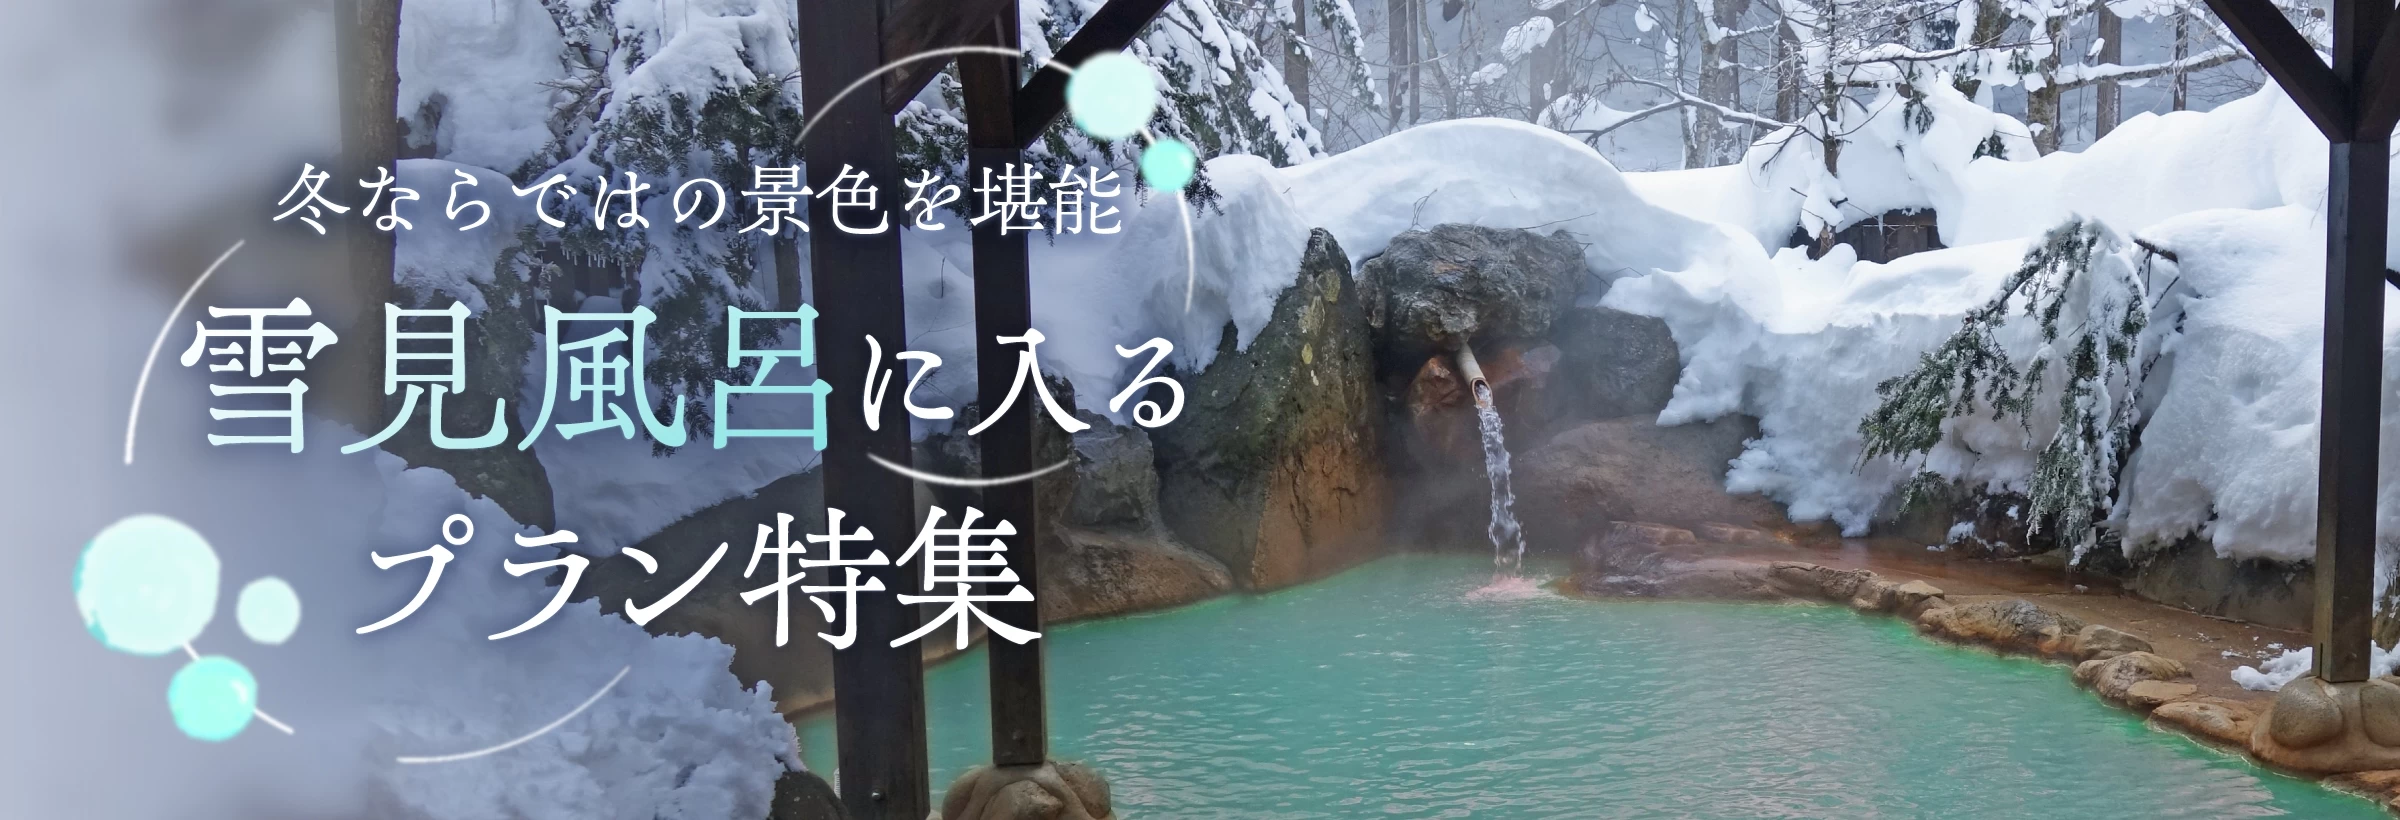 冬だからこそ見られる絶景が雪景色。露天風呂に入ればひんやり冷たい空気と、ポカポカの温泉でいつもの温泉旅行は違う、ちょっと贅沢な時間が過ごせます。日本全国で寒い冬ならではの「雪見風呂」が楽しめる旅行プランをまとめてみました。